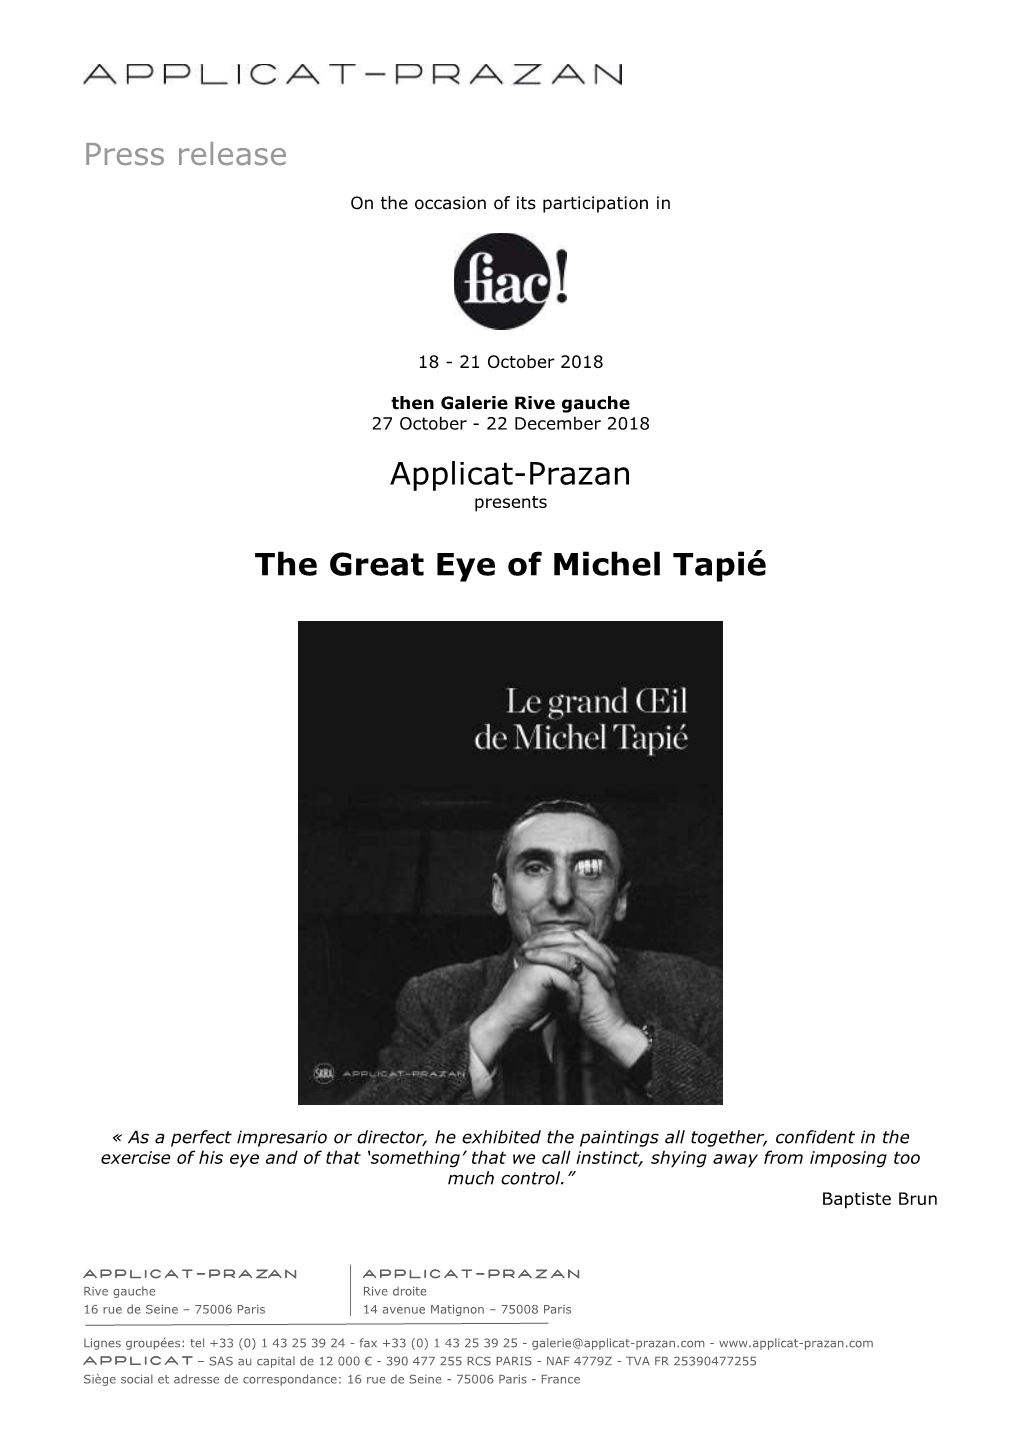 Press Release Applicat-Prazan the Great Eye of Michel Tapié